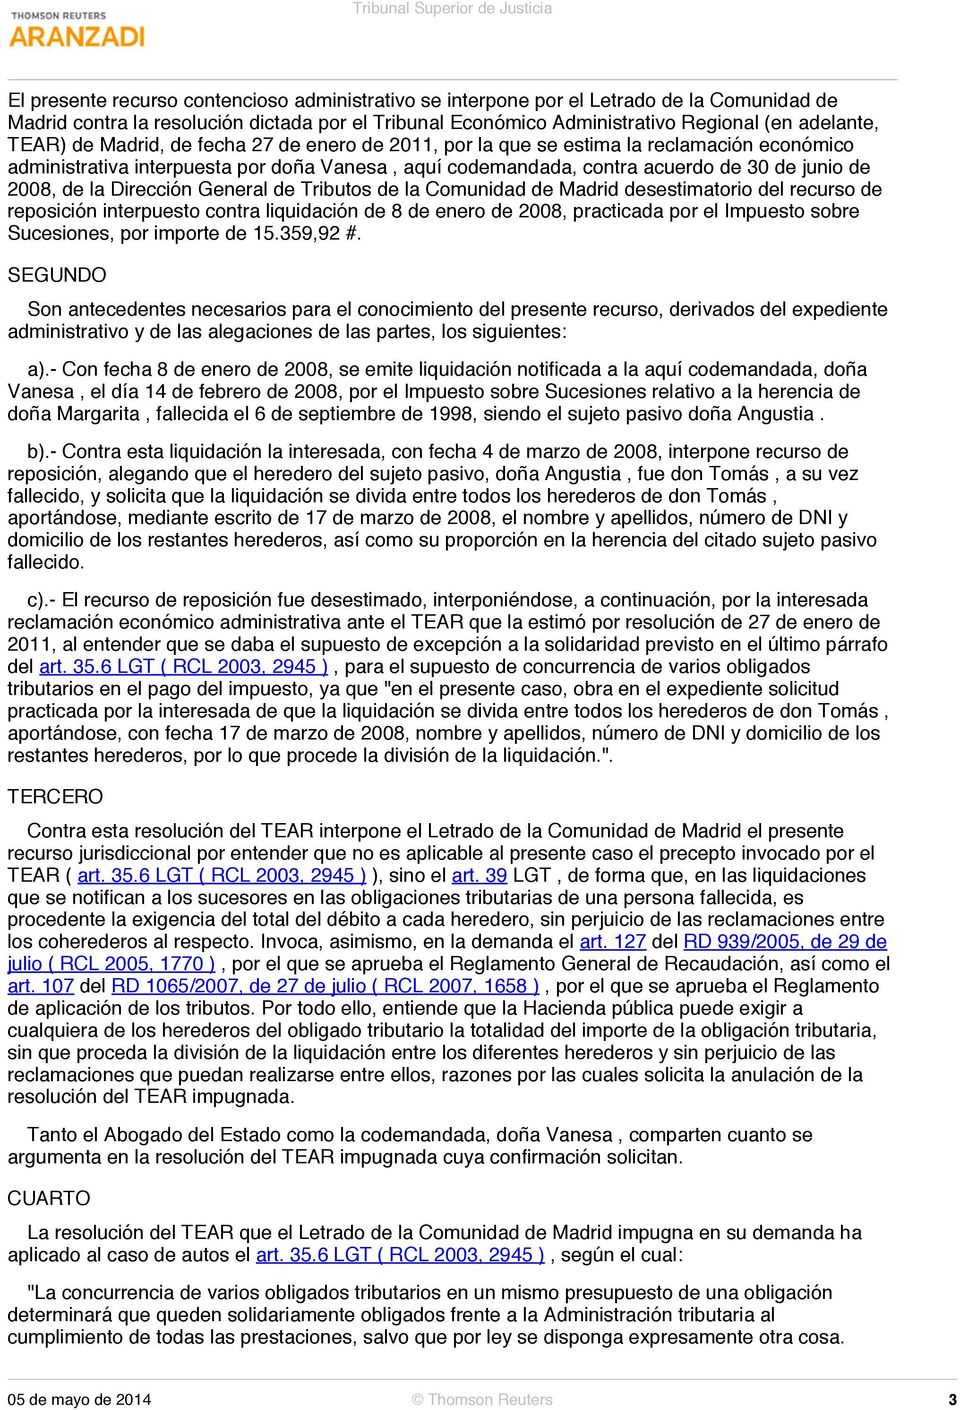 Dirección General de Tributos de la Comunidad de Madrid desestimatorio del recurso de reposición interpuesto contra liquidación de 8 de enero de 2008, practicada por el Impuesto sobre Sucesiones, por